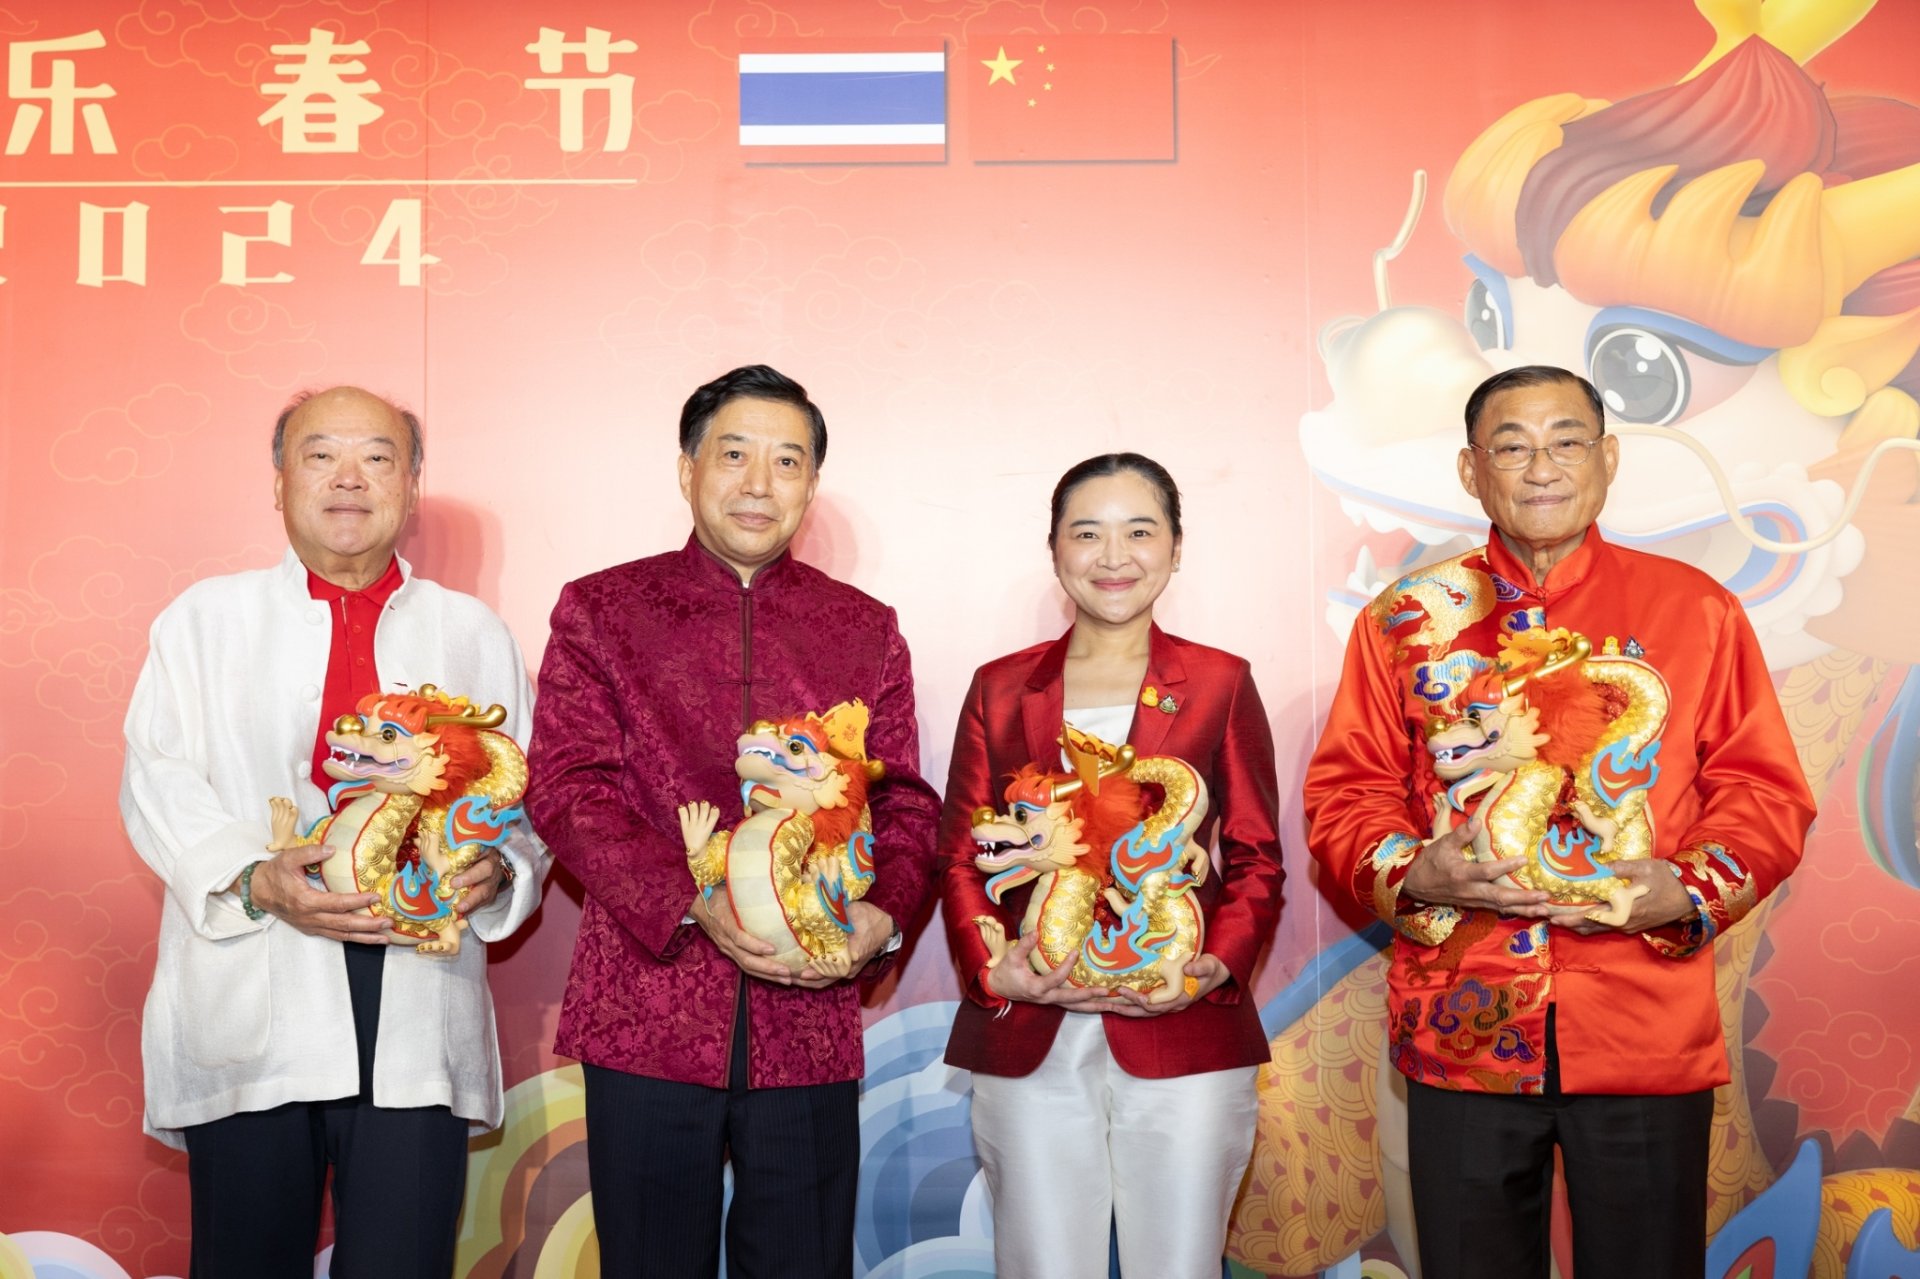 สถานเอกอัครราชทูตจีนฯ ประสานความร่วมมือ กระทรวงการท่องเที่ยวและกีฬากระทรวงวัฒนธรรม และบีทีเอส กรุ๊ปฯ จัดงาน Happy Chinese New Year @ BTS SkyTrain ฉลองเทศกาลตรุษจีน สานความสัมพันธ์วัฒนธรรมจีน-ไทย